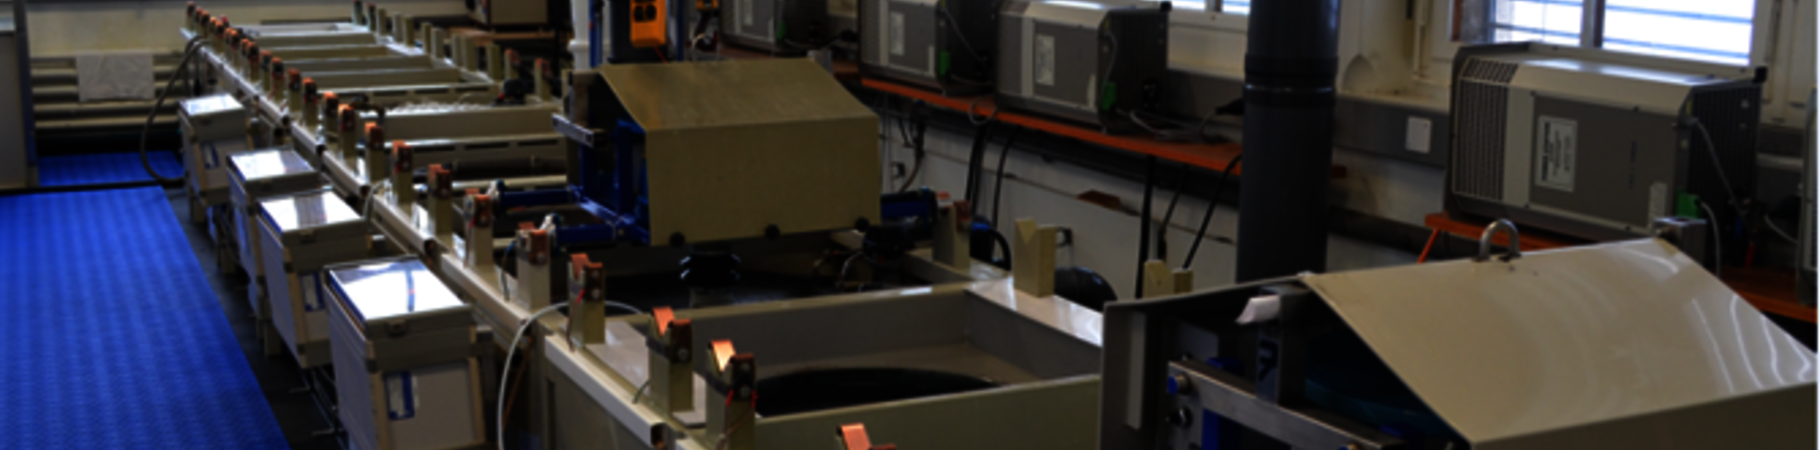 Machines de contact plating, fabriquées par Lemco Précision SA, dans l’une de ses usines en Suisse